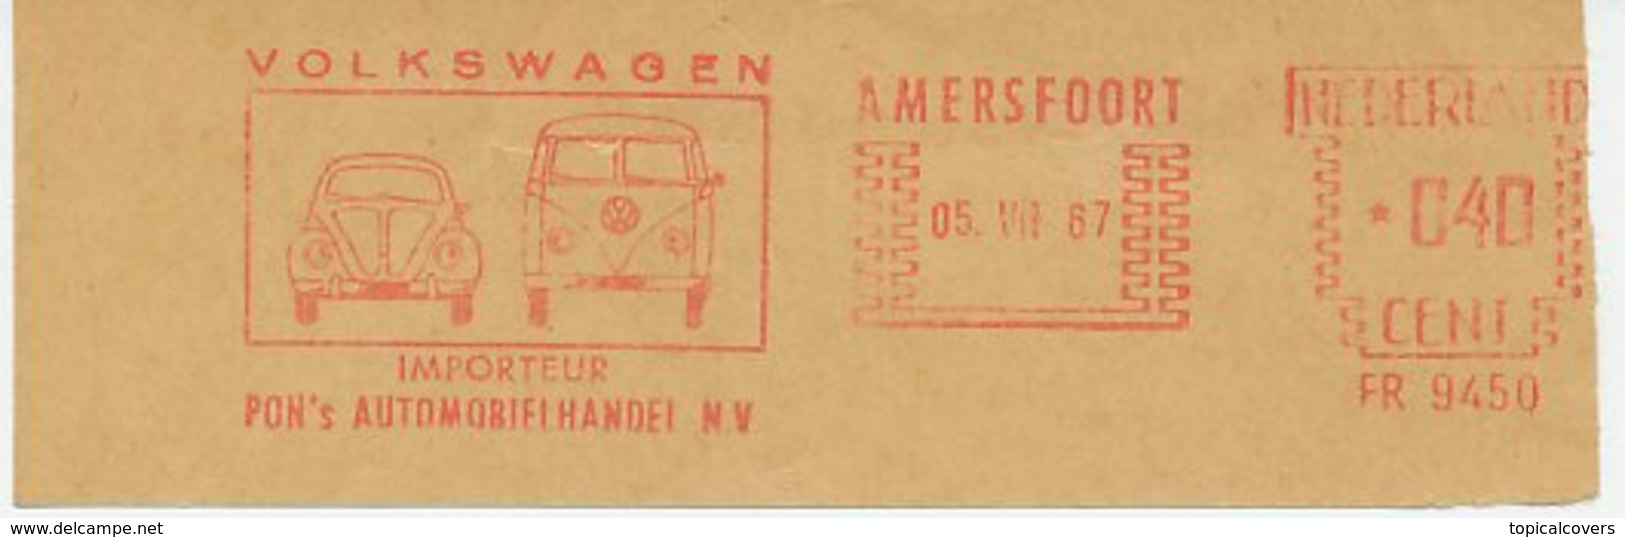 Meter Cut Netherlands 1967 Car - Volkswagen Beetle - Van - Cars